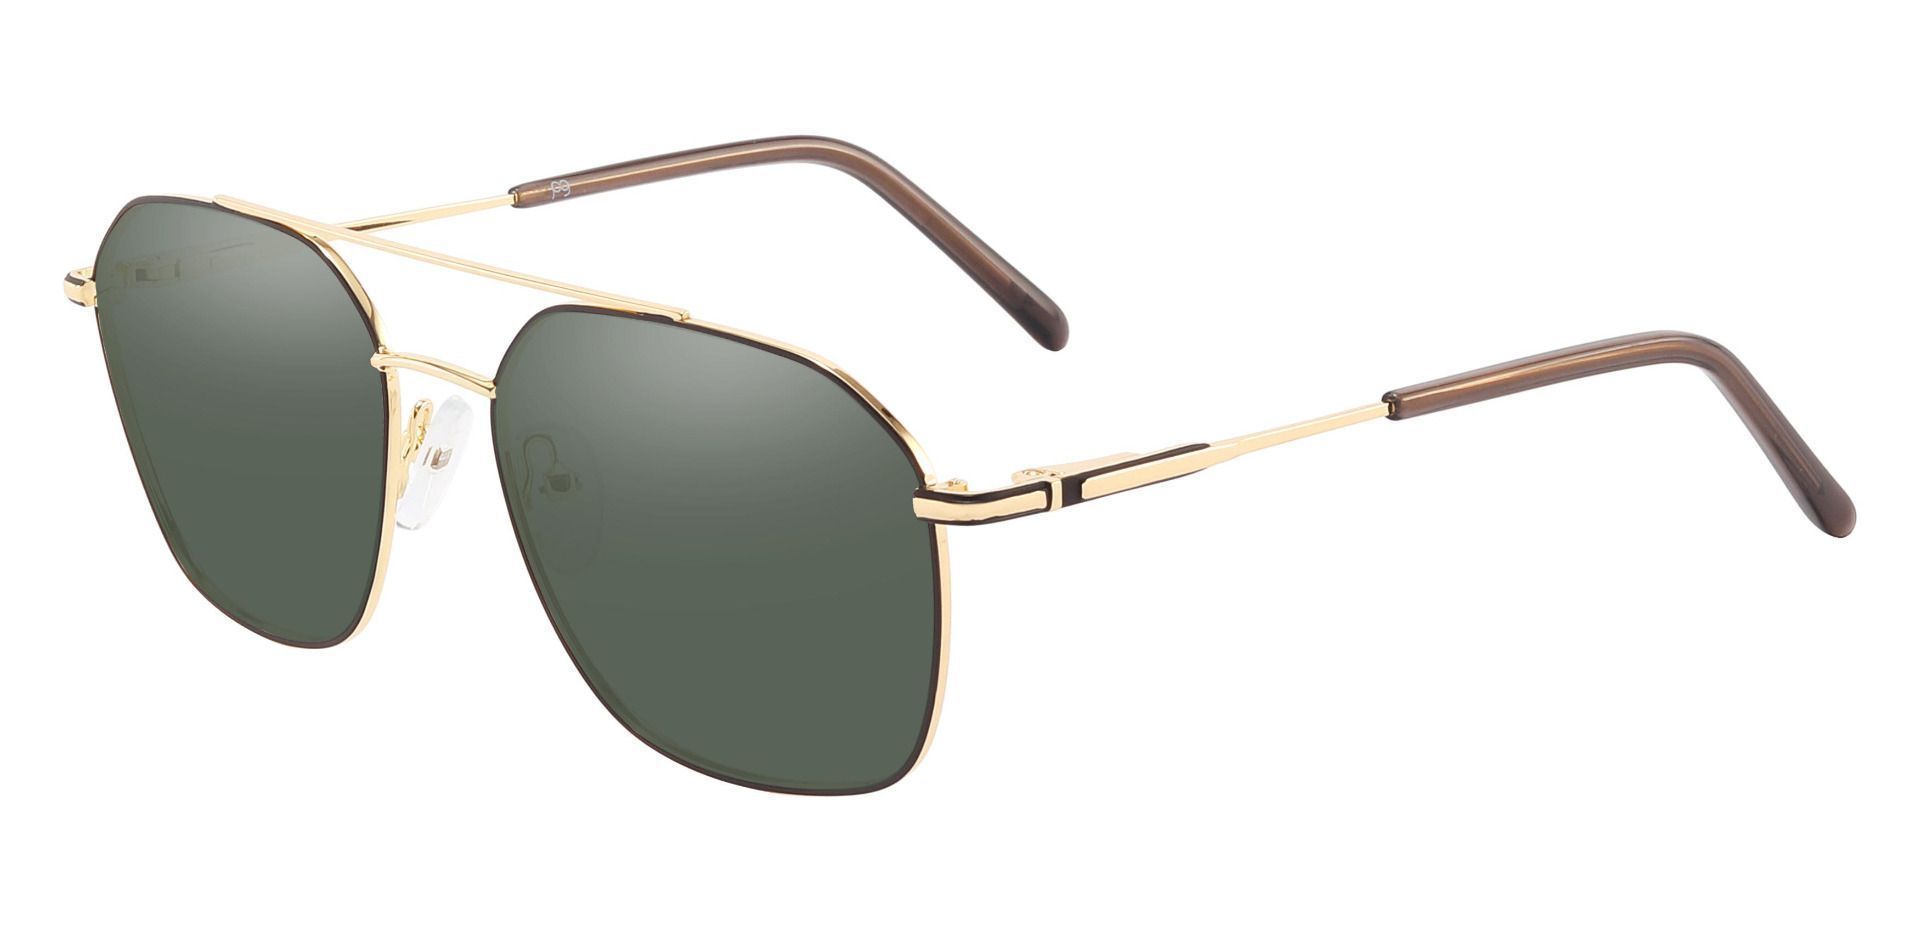 Harvey Aviator Progressive Sunglasses - Gold Frame With Green Lenses